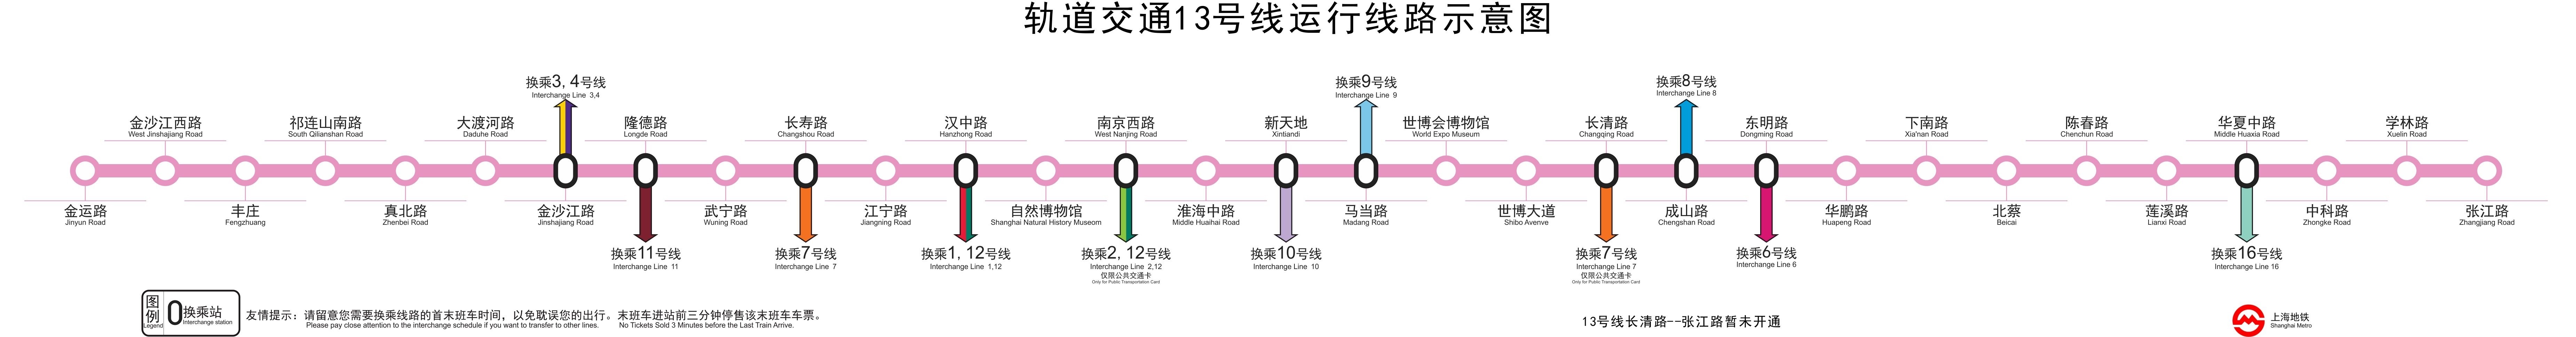 上海捷運13號線